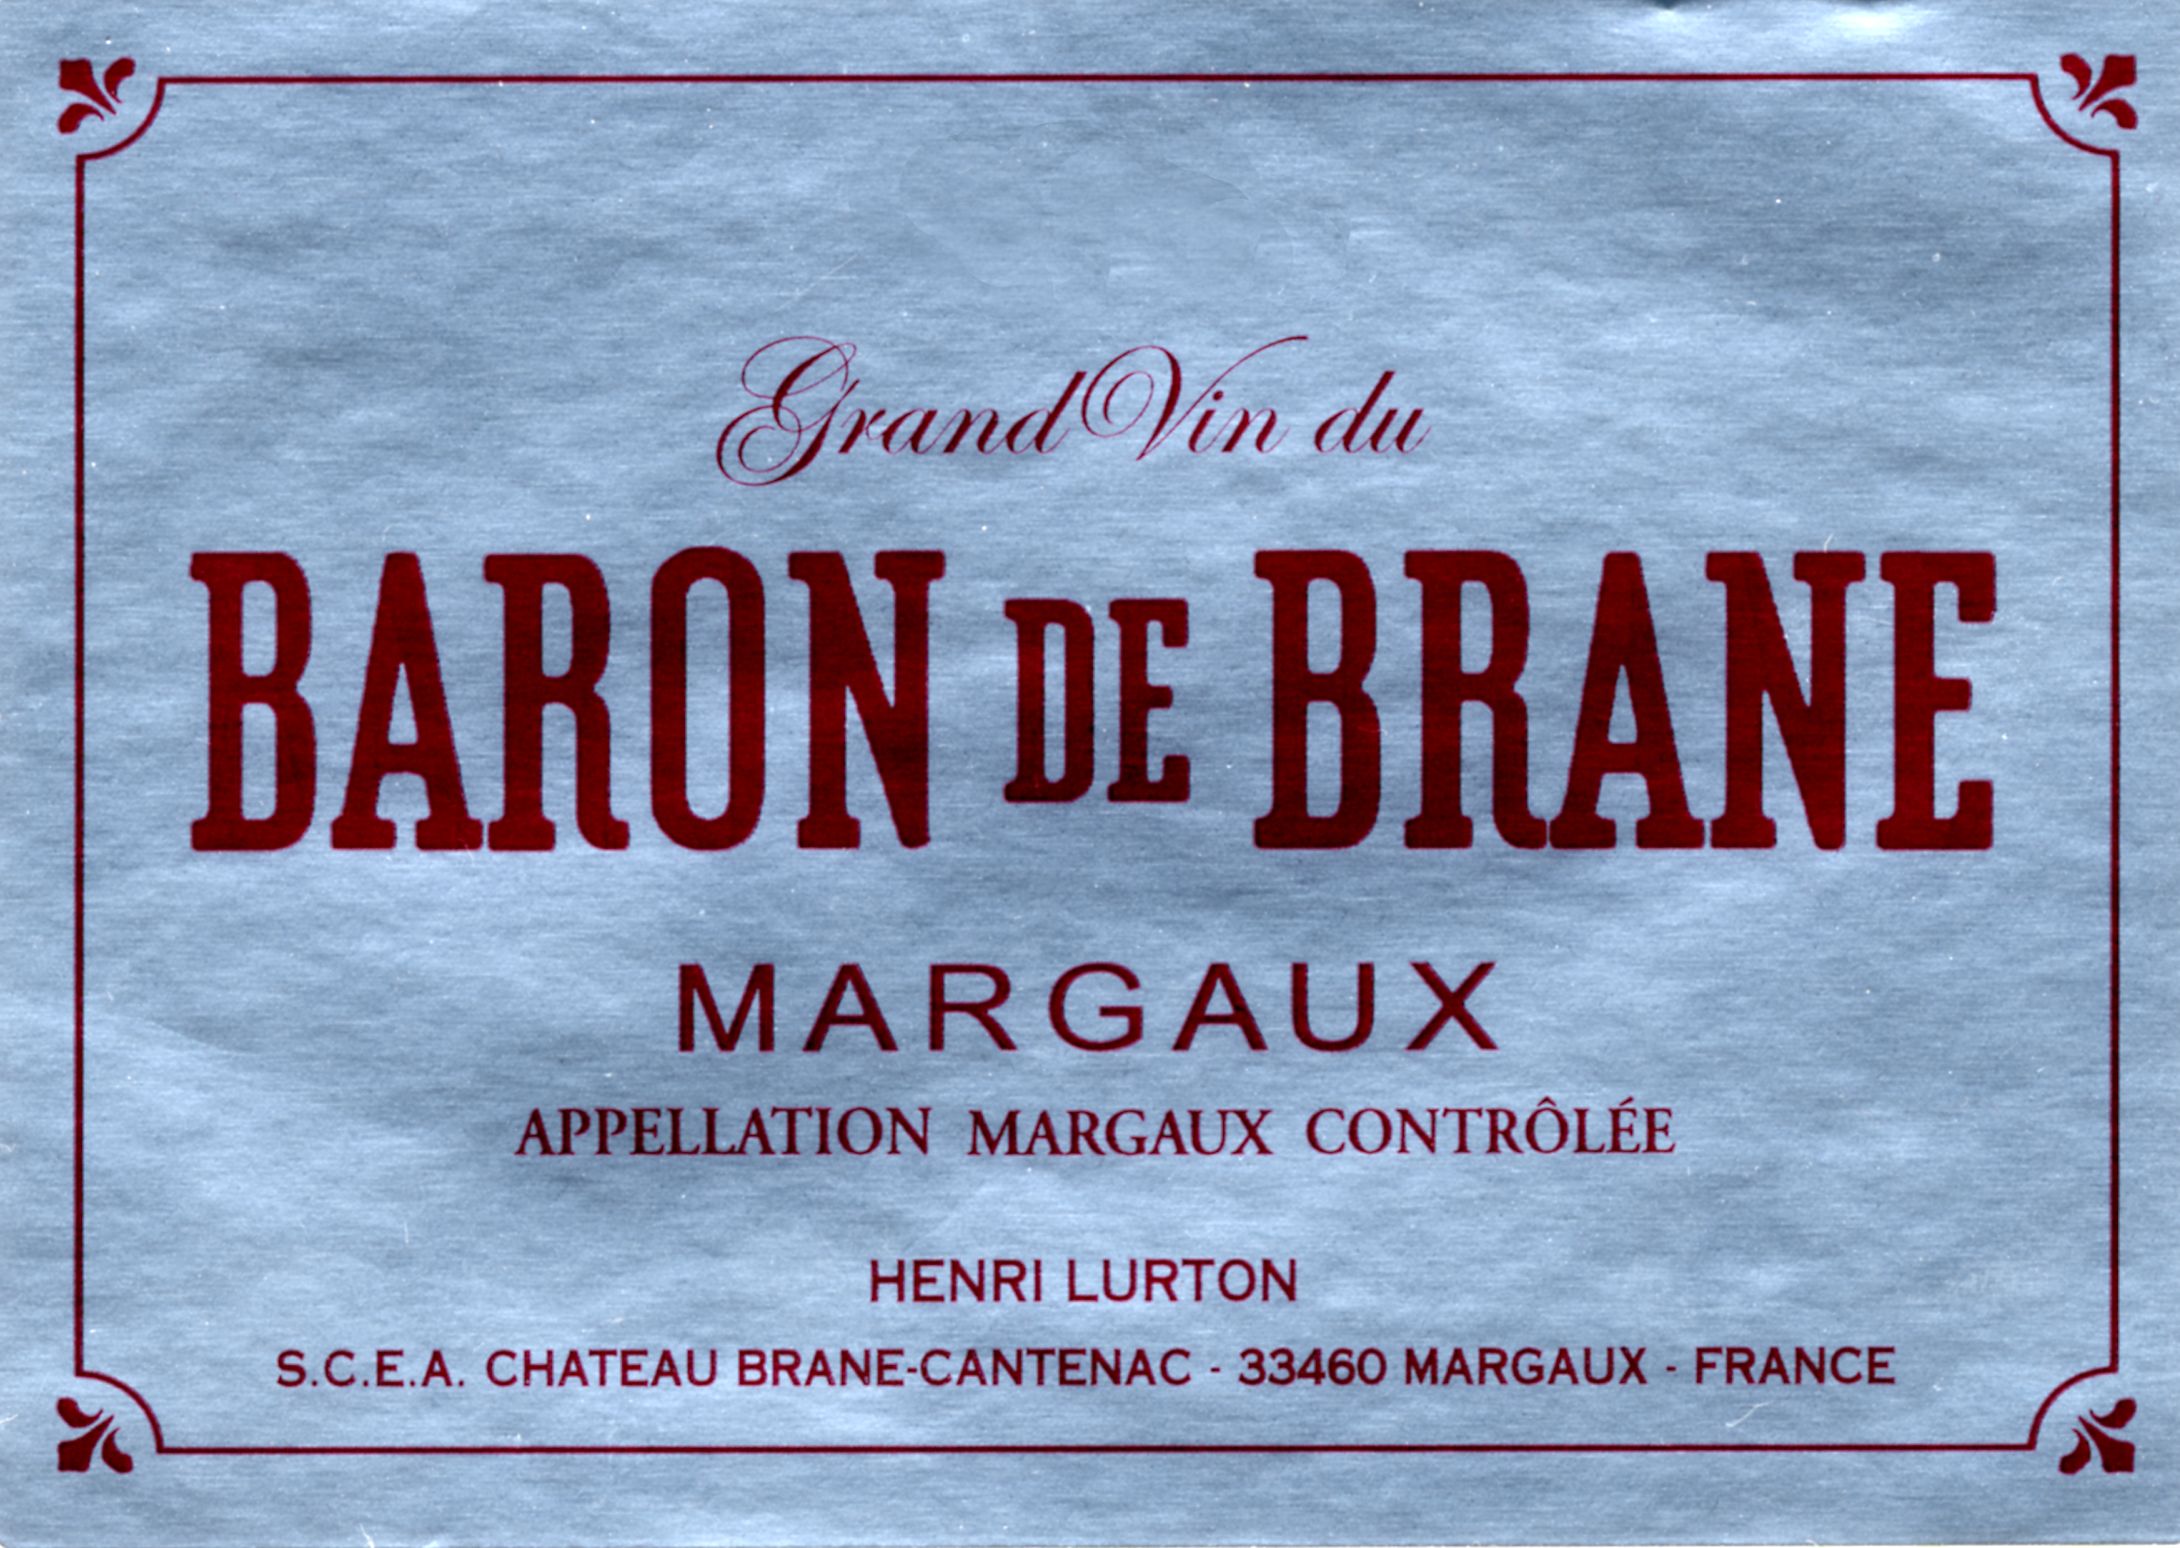 Baron De Brane label